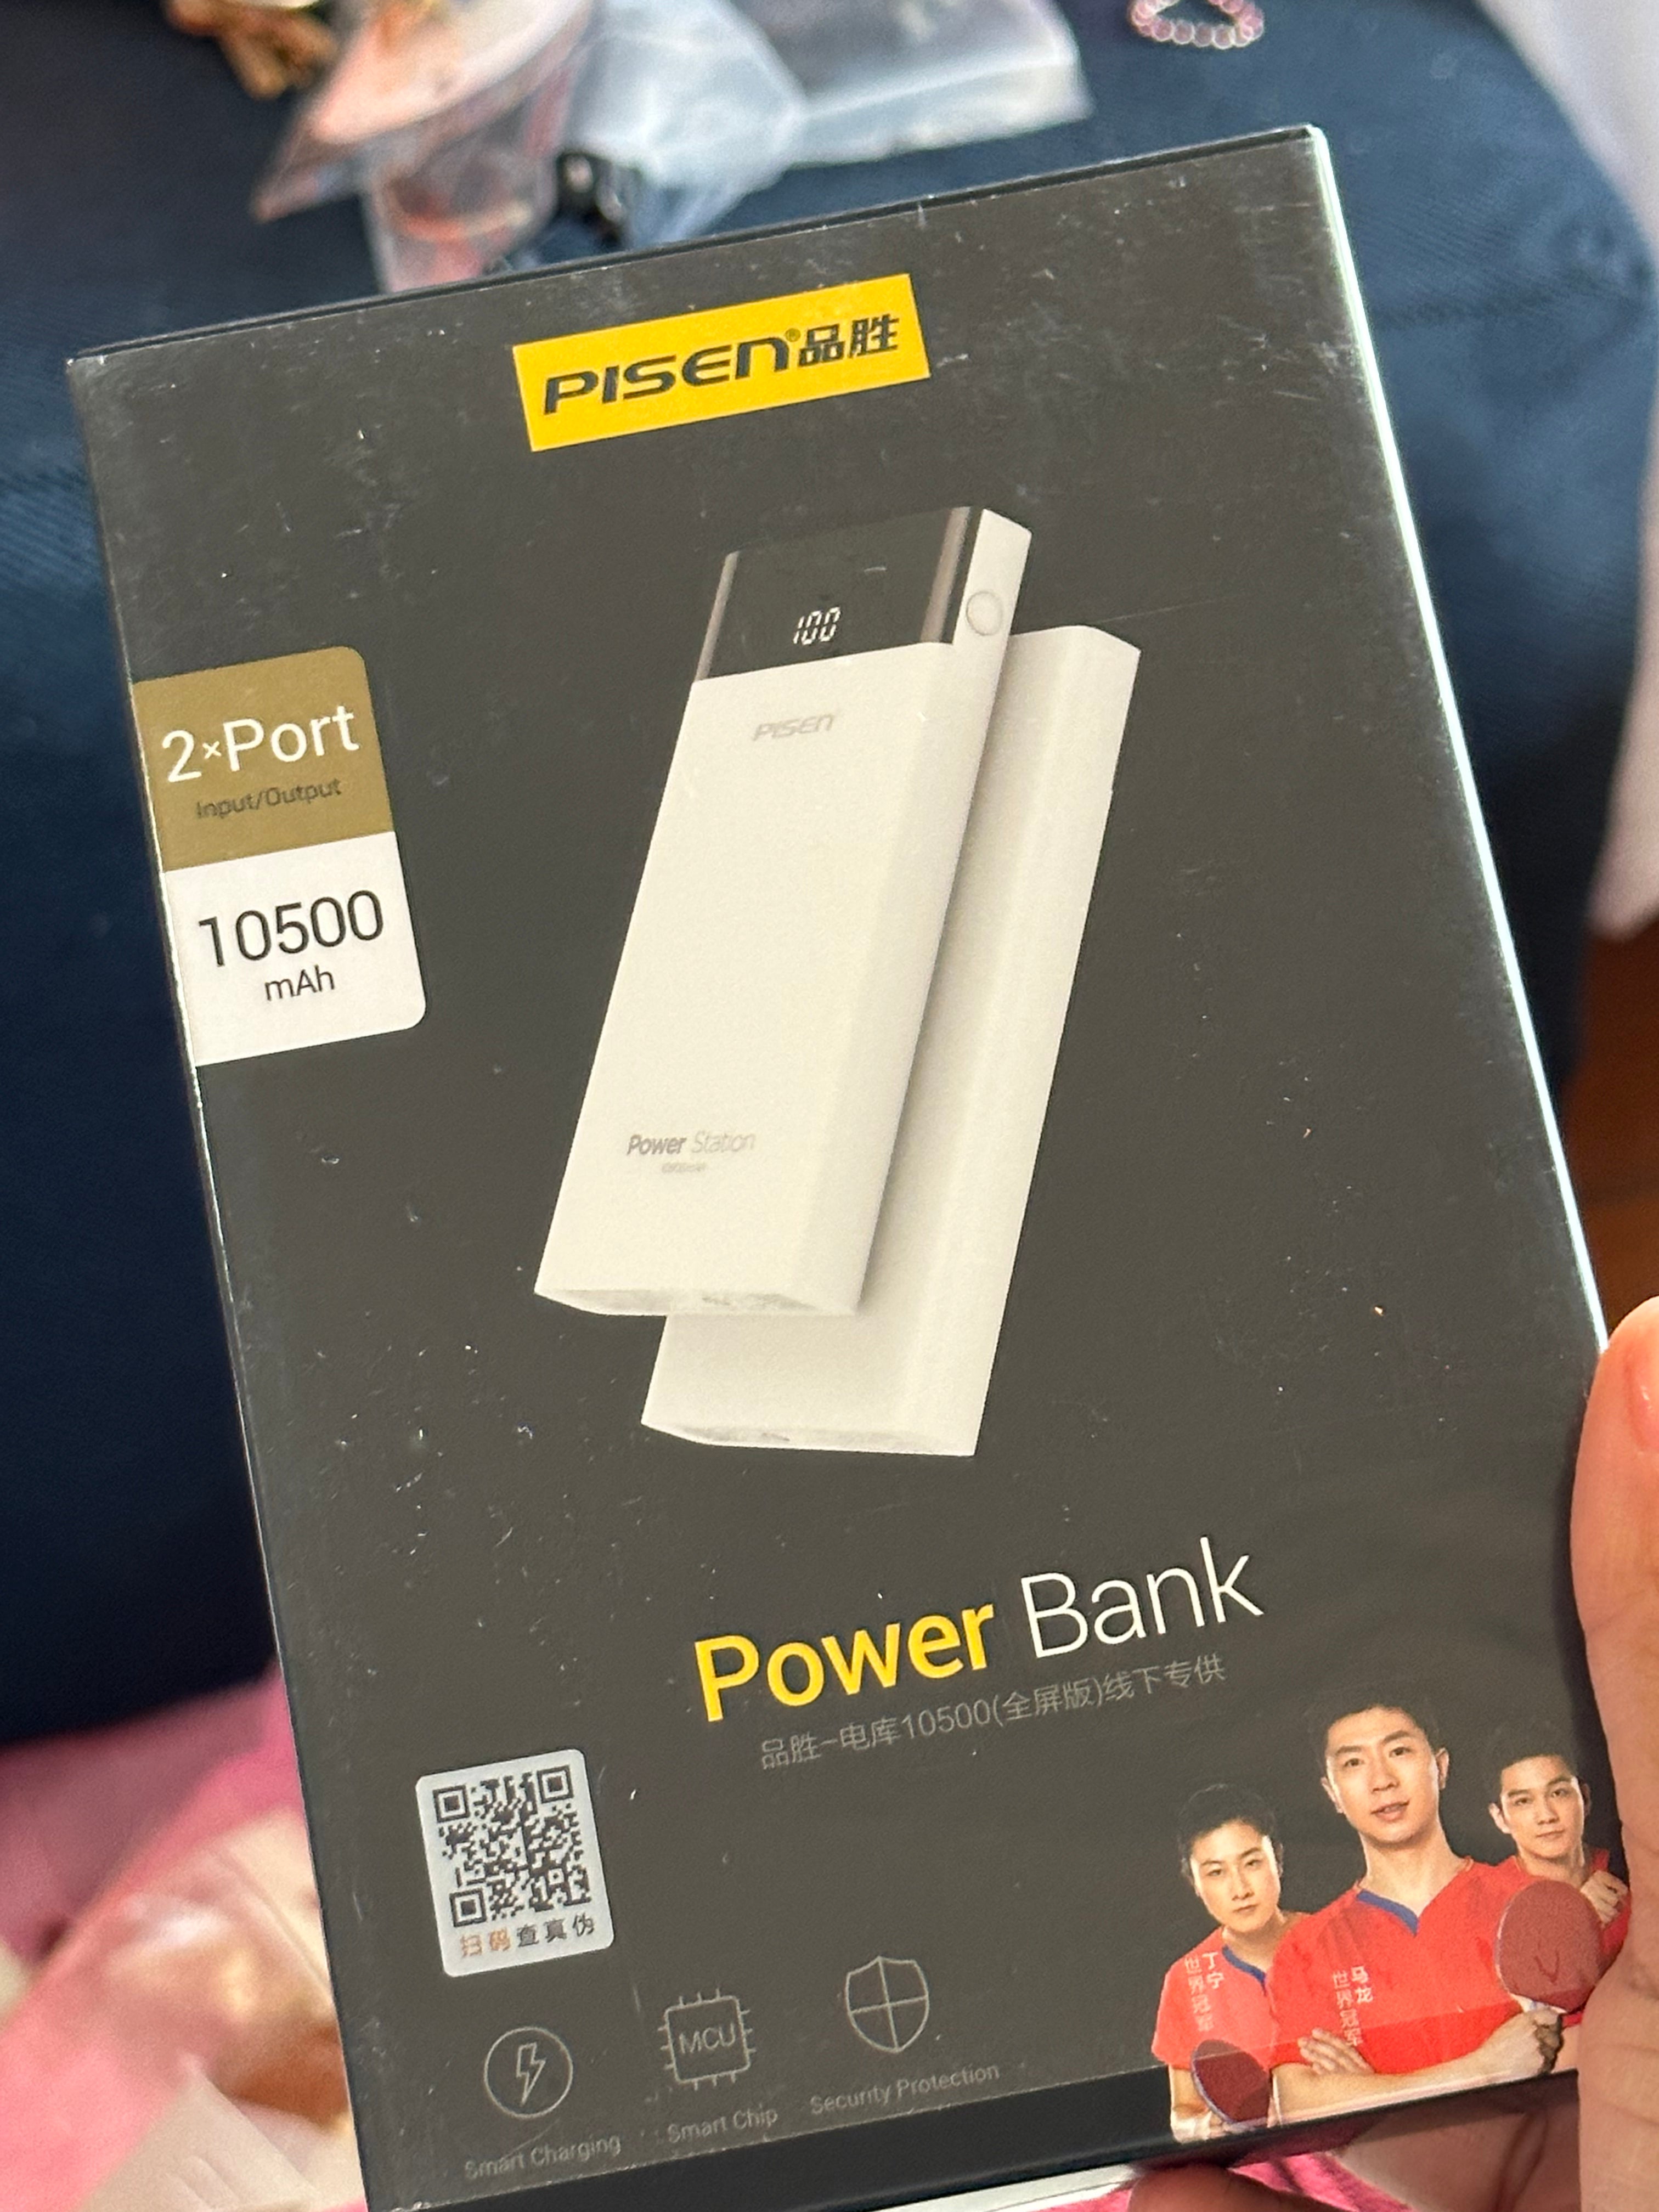 Power bank 10500 mAH